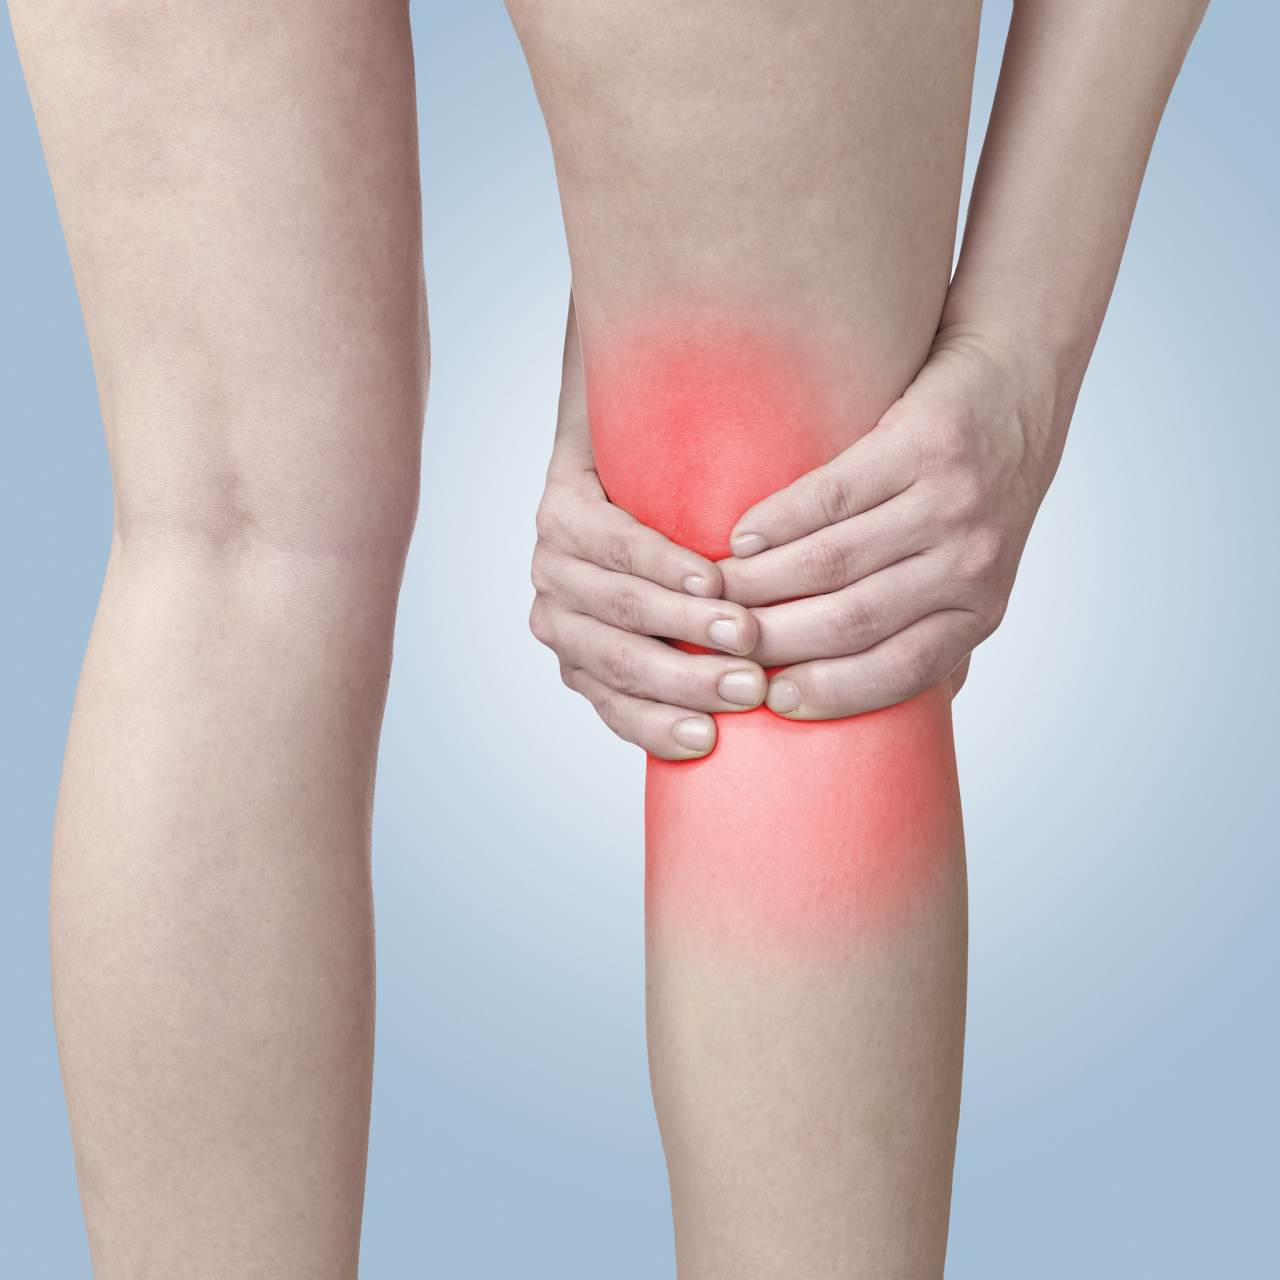 痛风性关节炎膝盖疼痛难忍可以通过药物治疗如口服非甾体抗炎药物如双